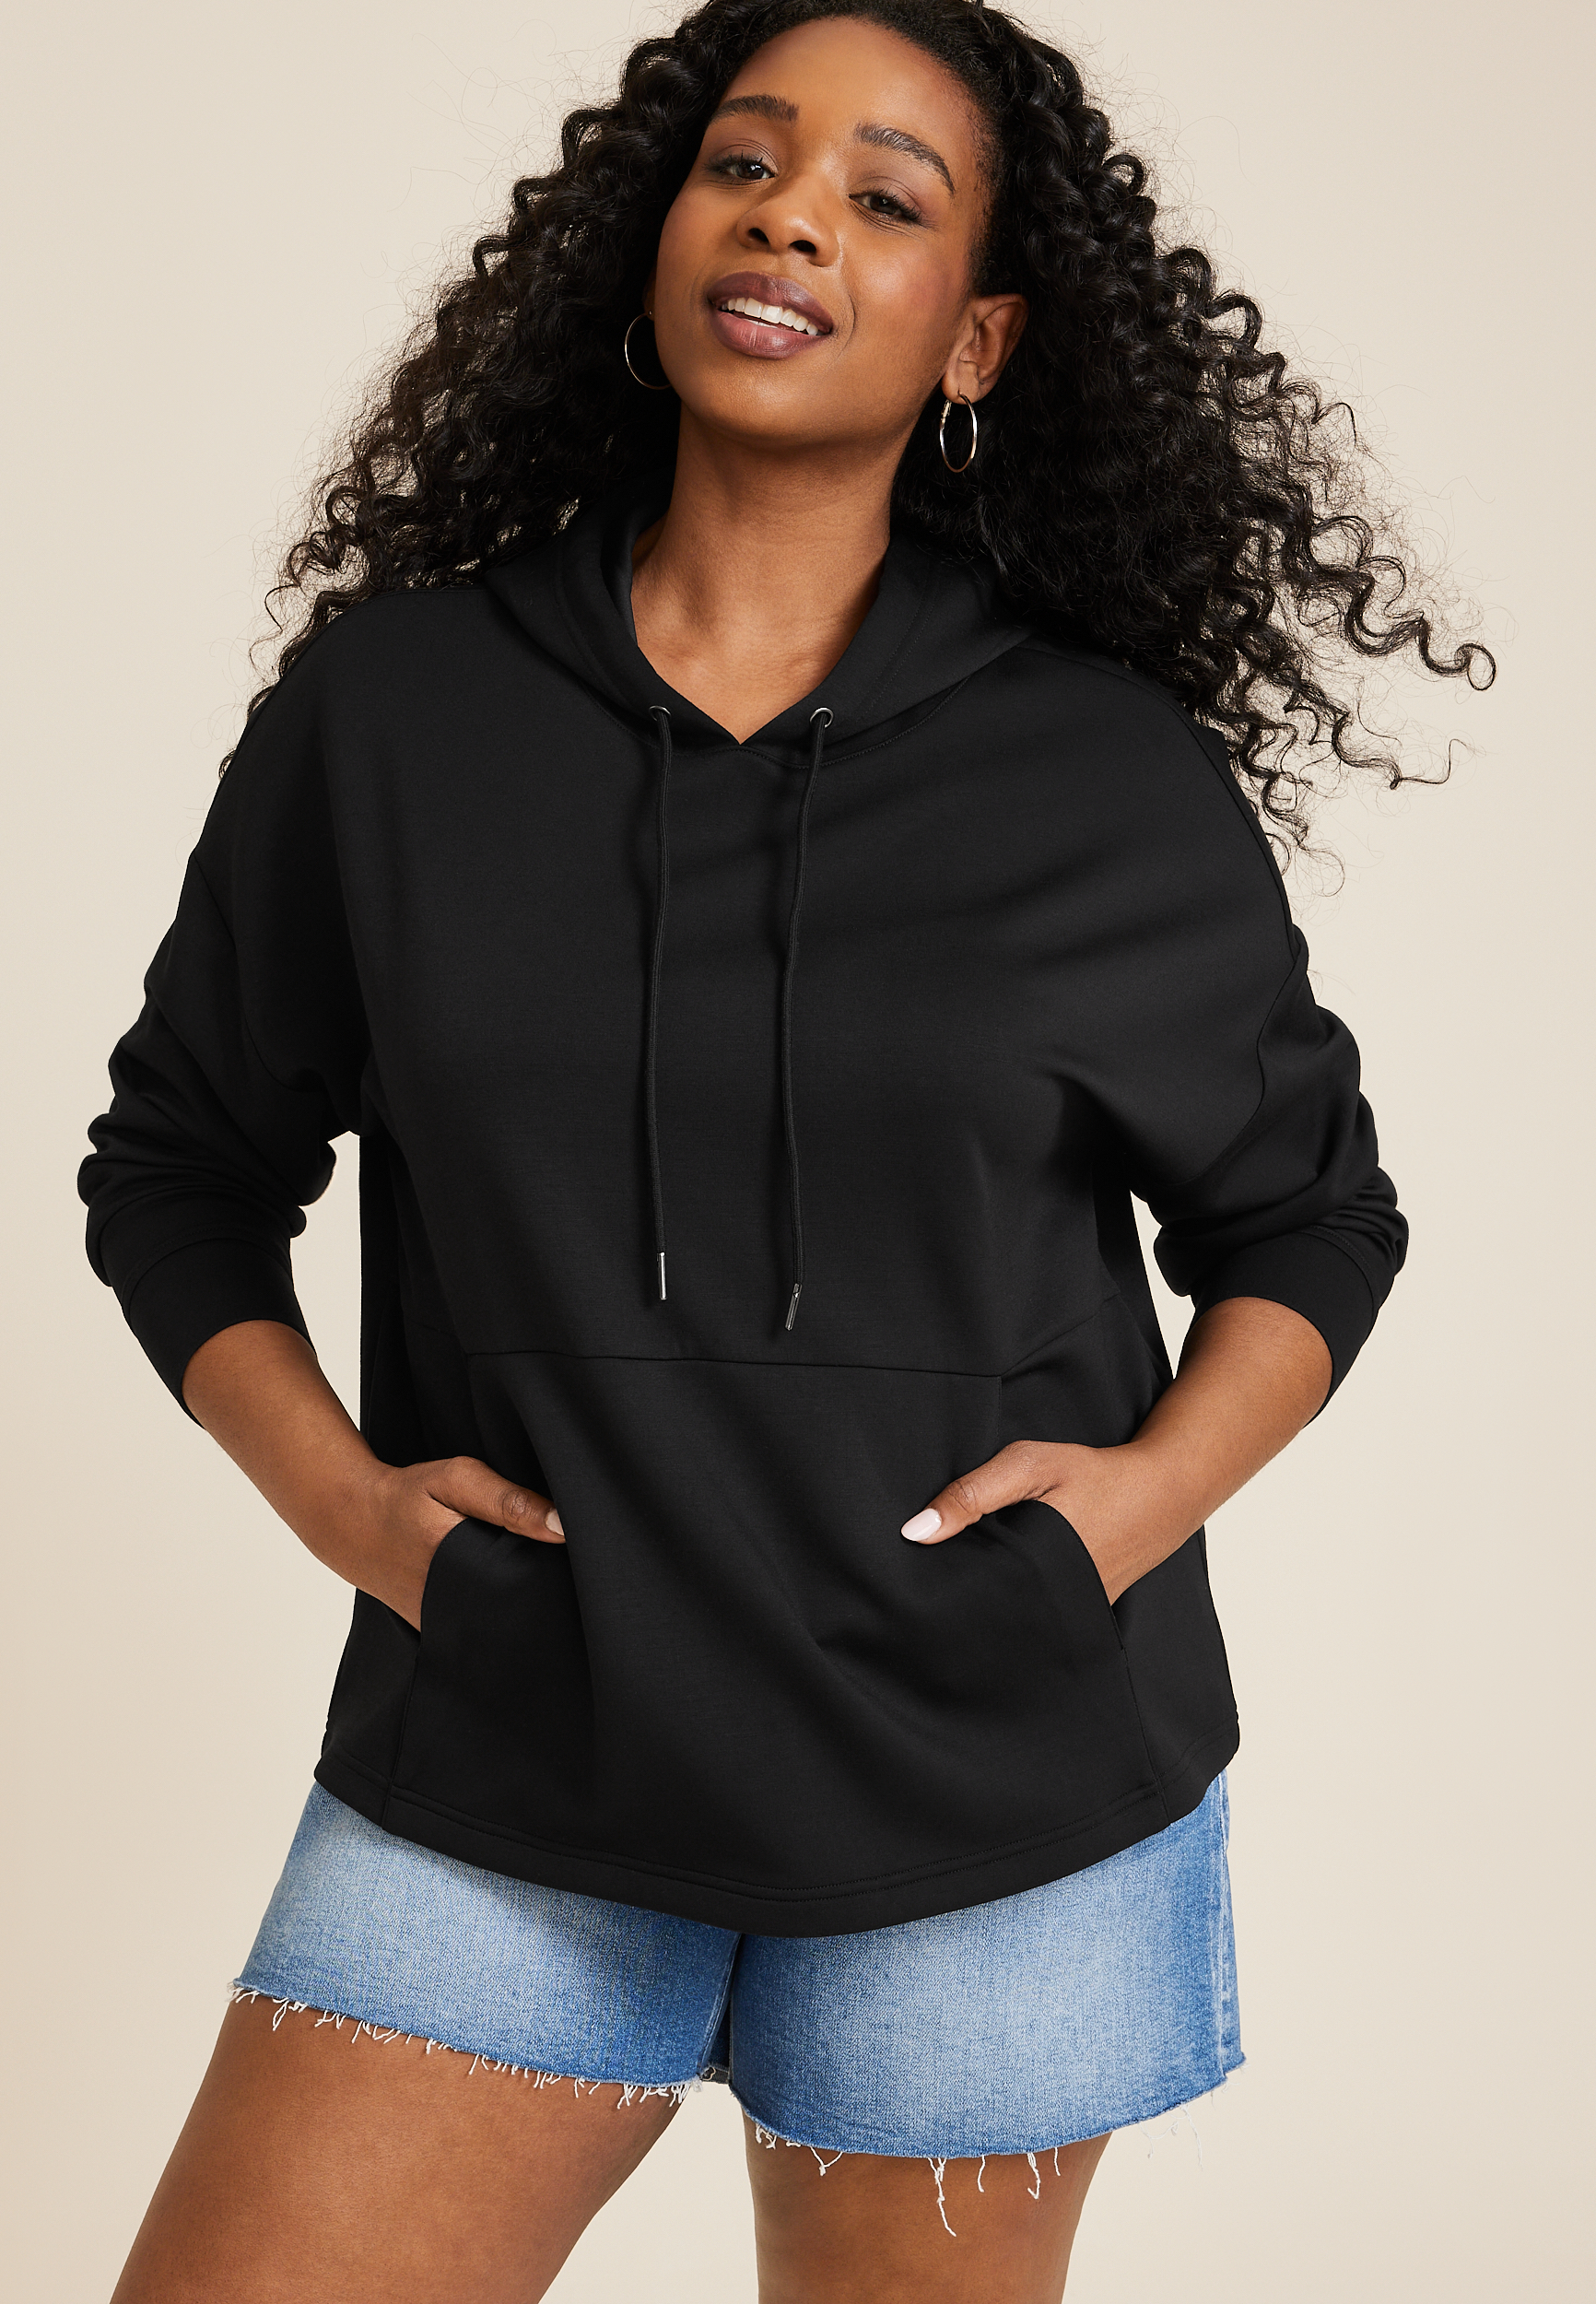 Women's Brown Size 2X Hoodies & Sweatshirts